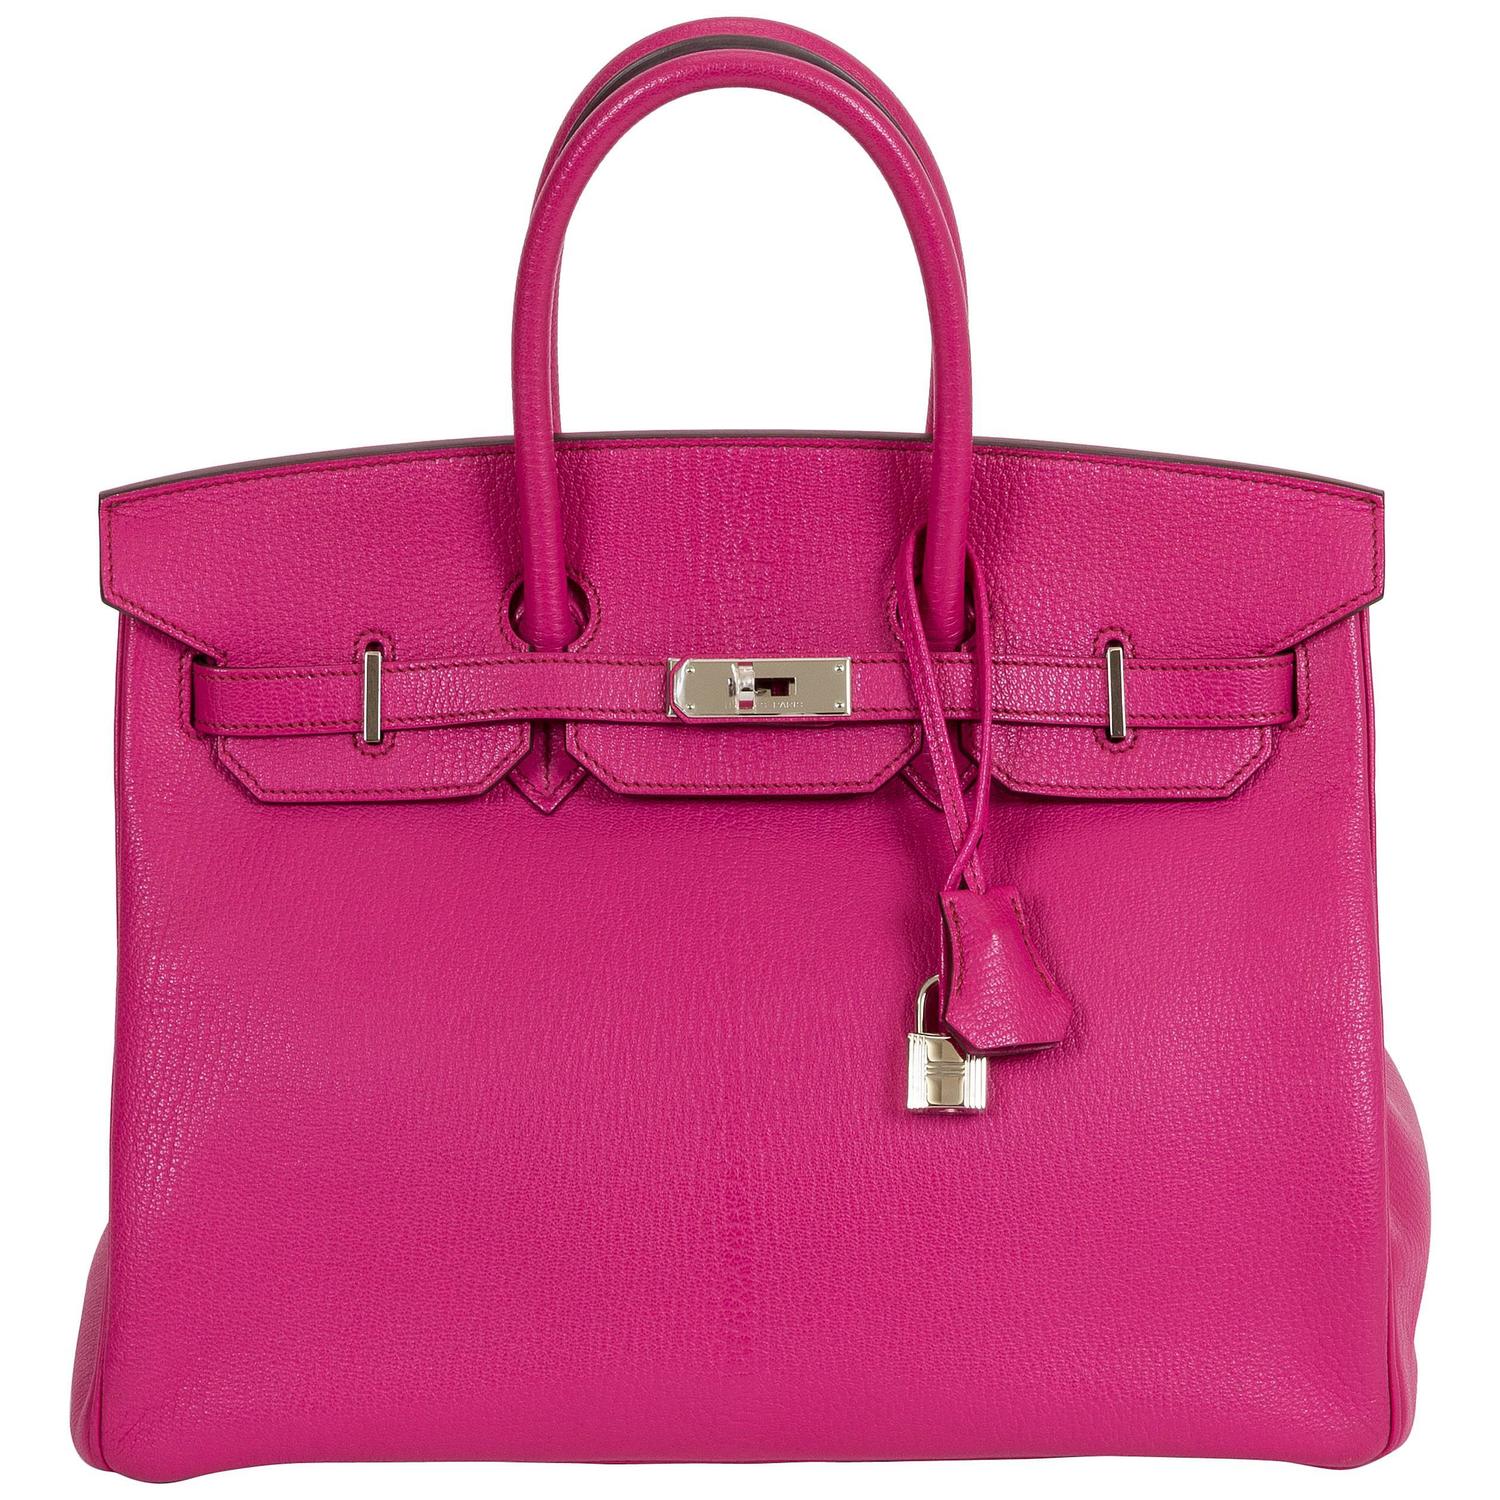 Hermès Rose Shocking Birkin Bag For Sale at 1stdibs